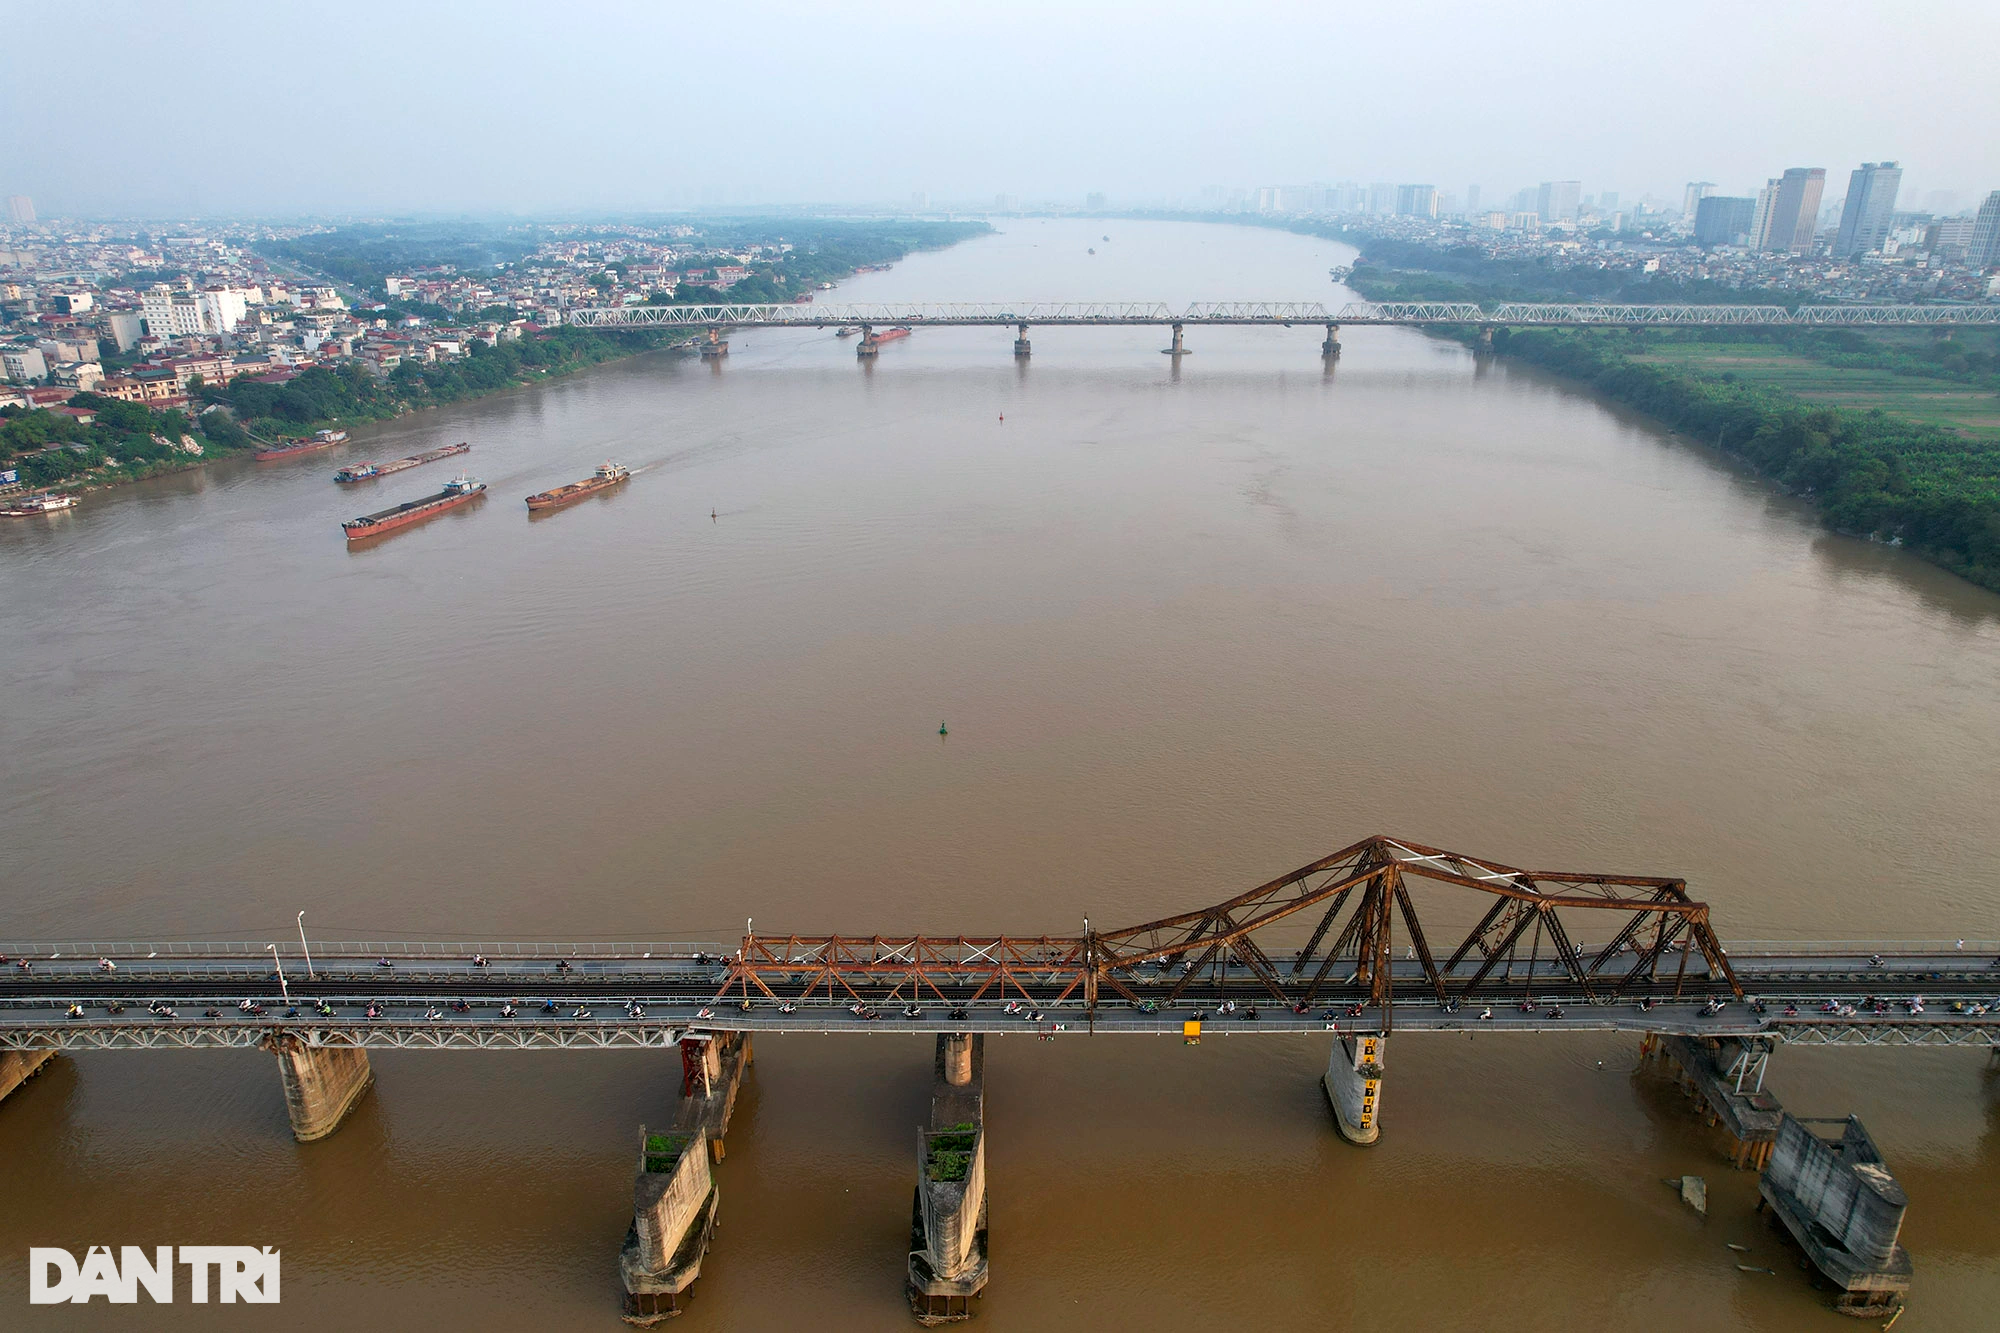 Ngắm 6 cầu qua sông Hồng tại Hà Nội - 3